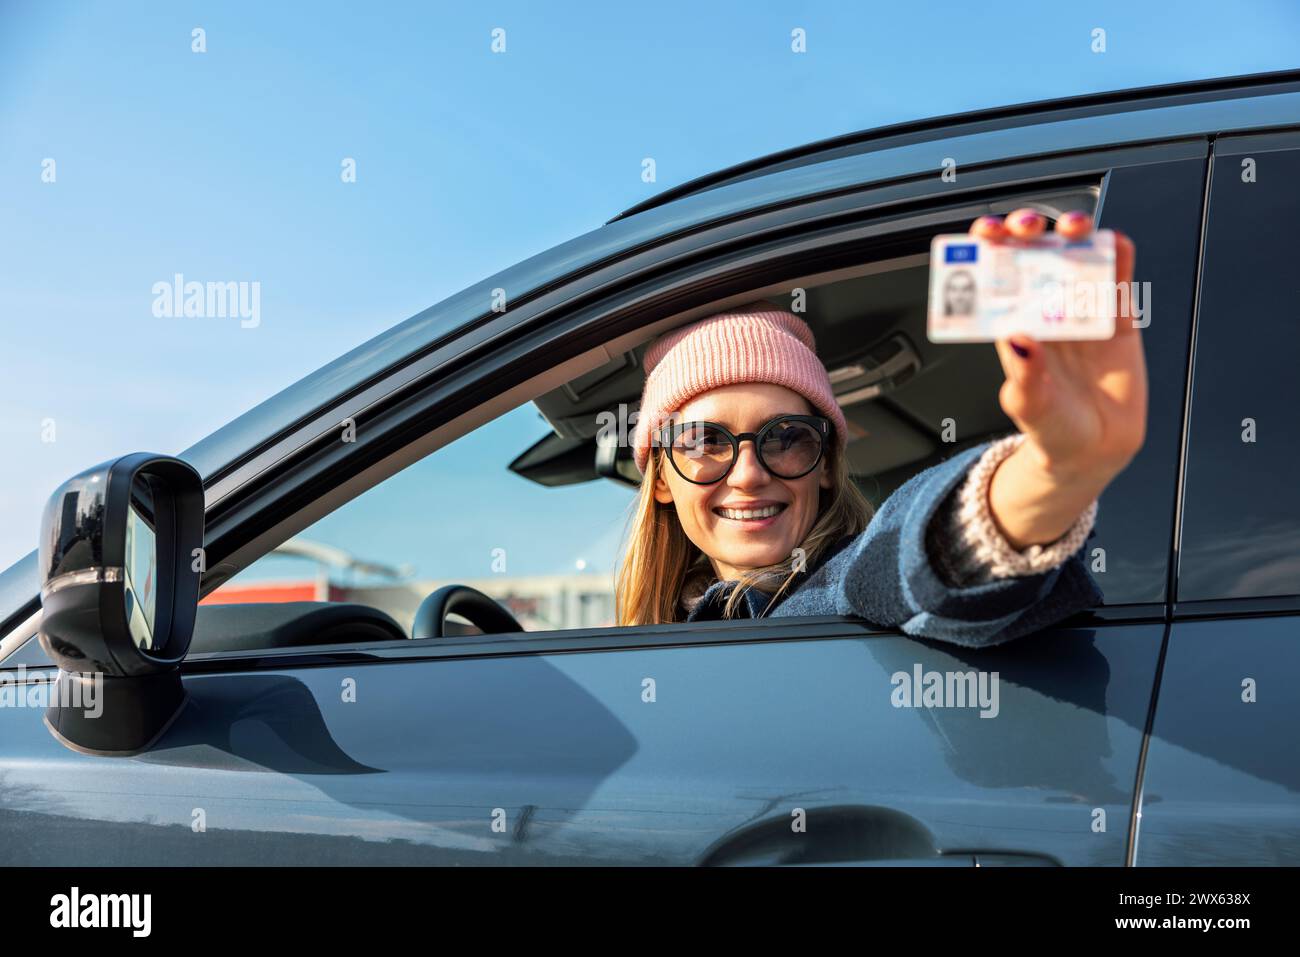 donna sorridente che mostra la sua nuova patente fuori dal finestrino dell'auto nella giornata di sole Foto Stock